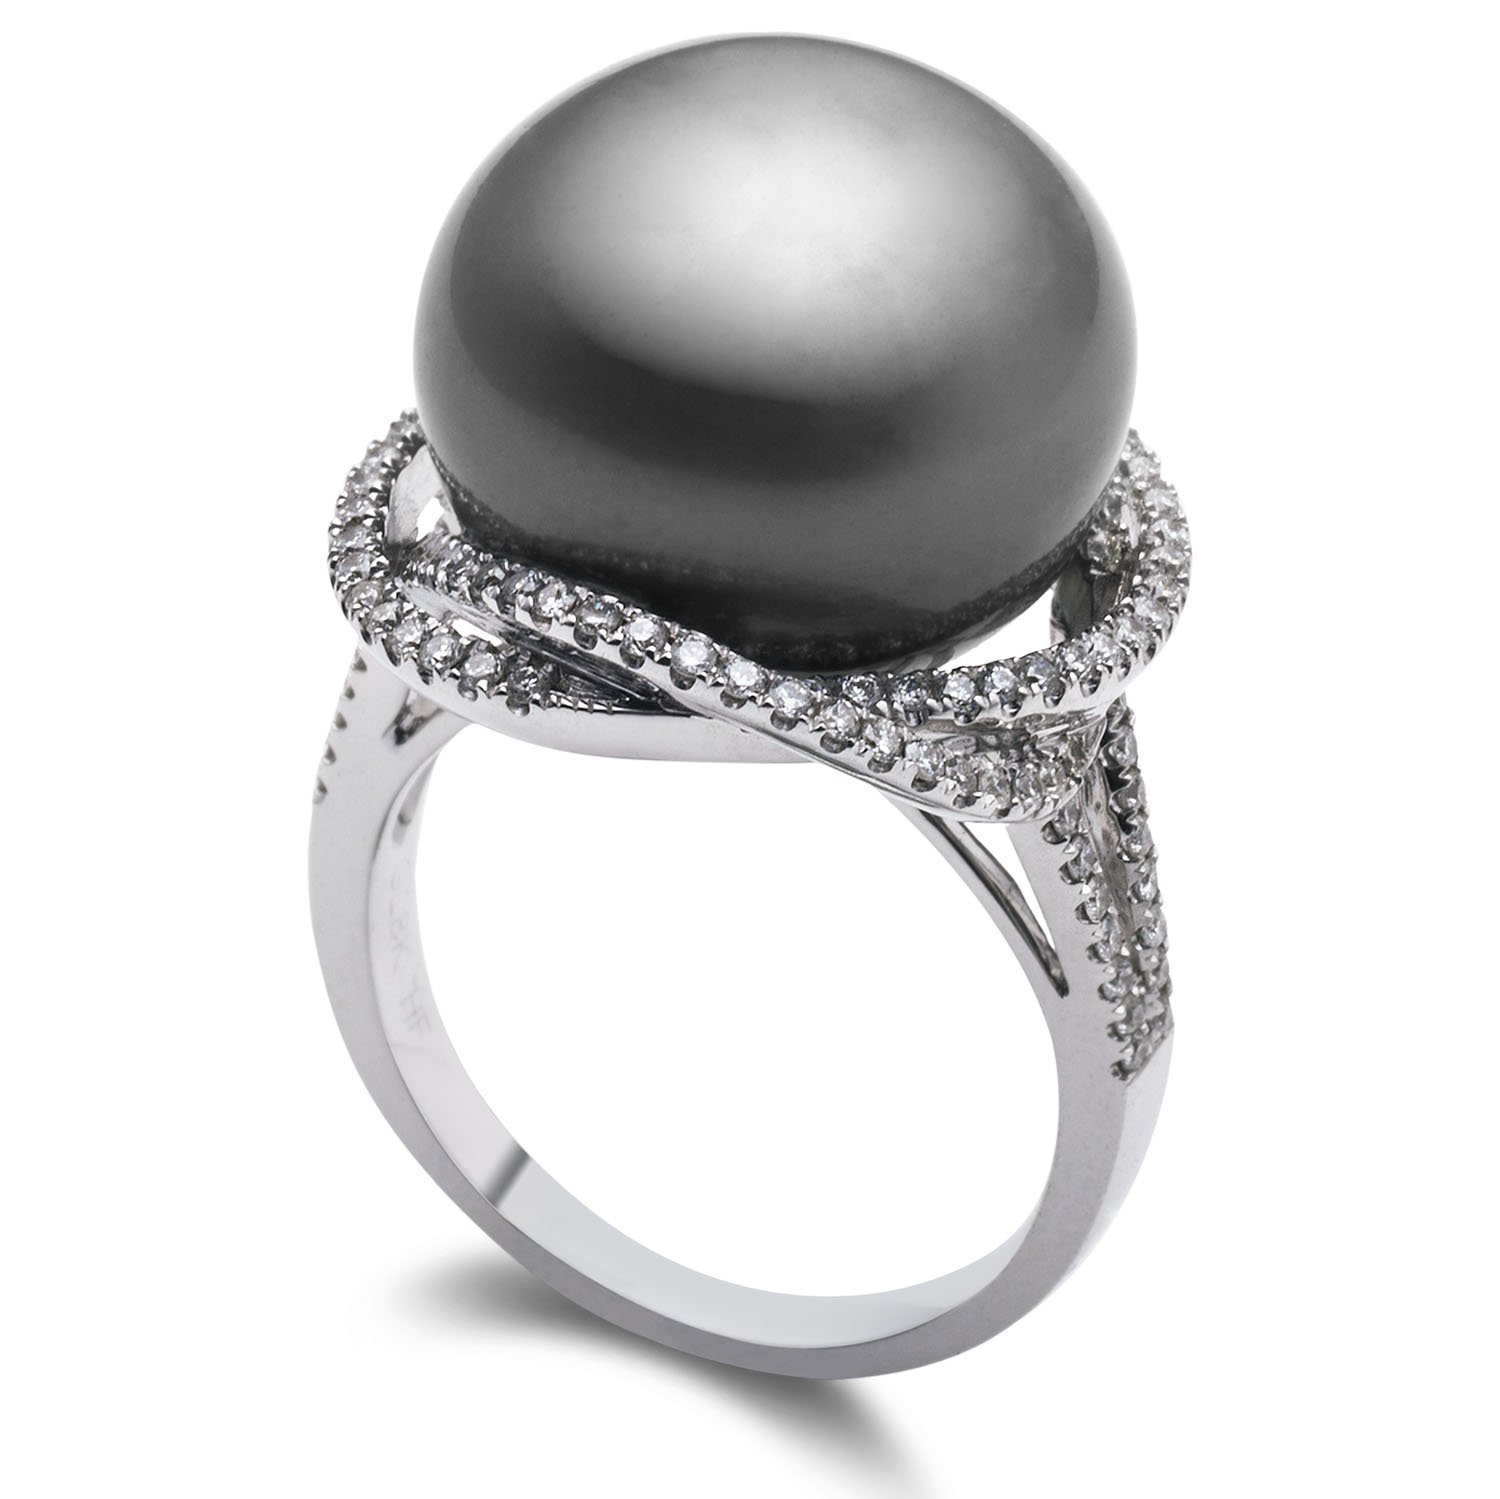 珍珠戒指精美大方 受到女性朋友喜爱